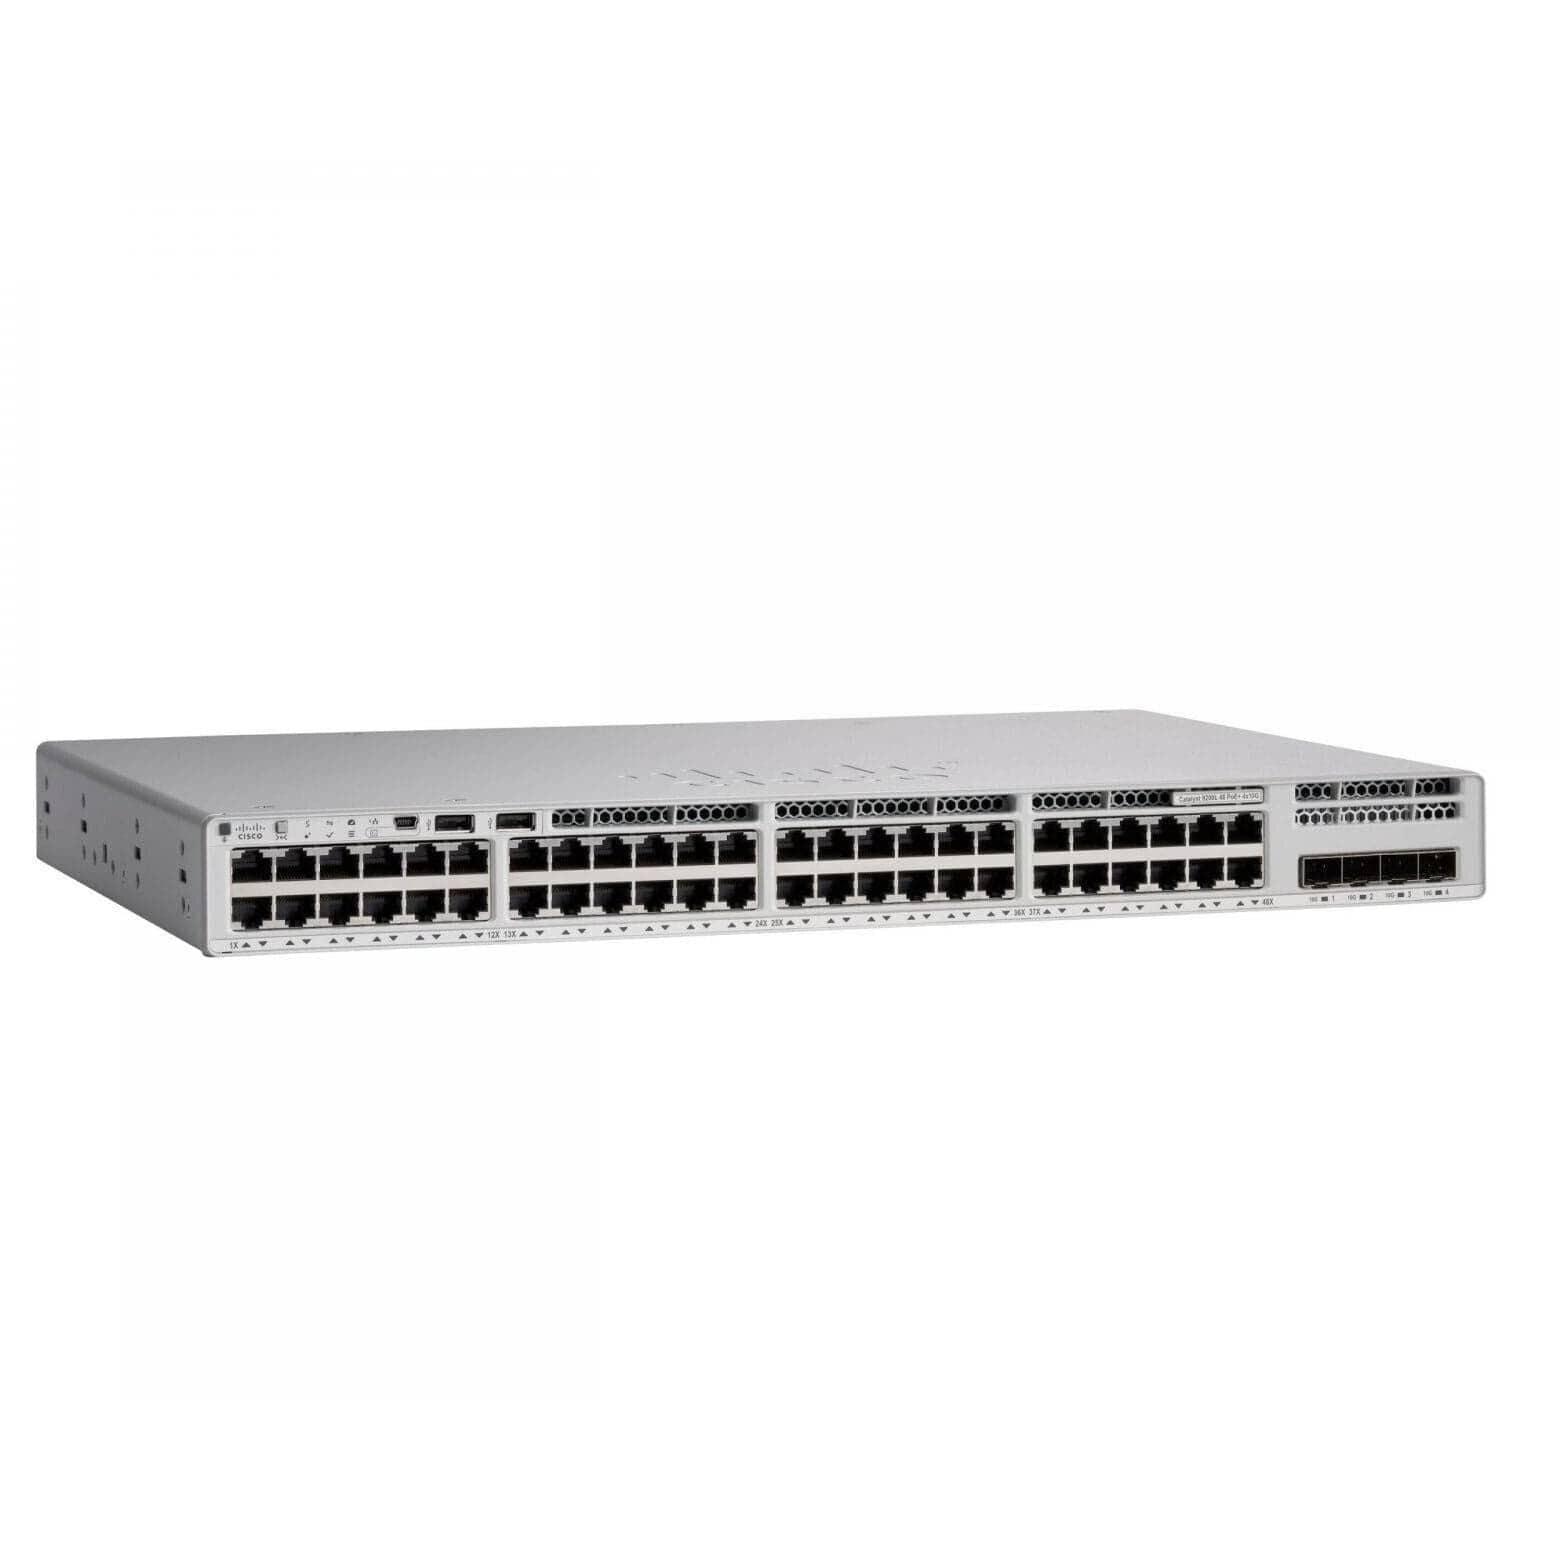 Cisco Catalyst 9200L 48-port Data 4x10G uplink Switch, Network Advantage - C9200L-48T-4X-A Refurbished - C9200L-48T-4X-A-R - Reef Telecom